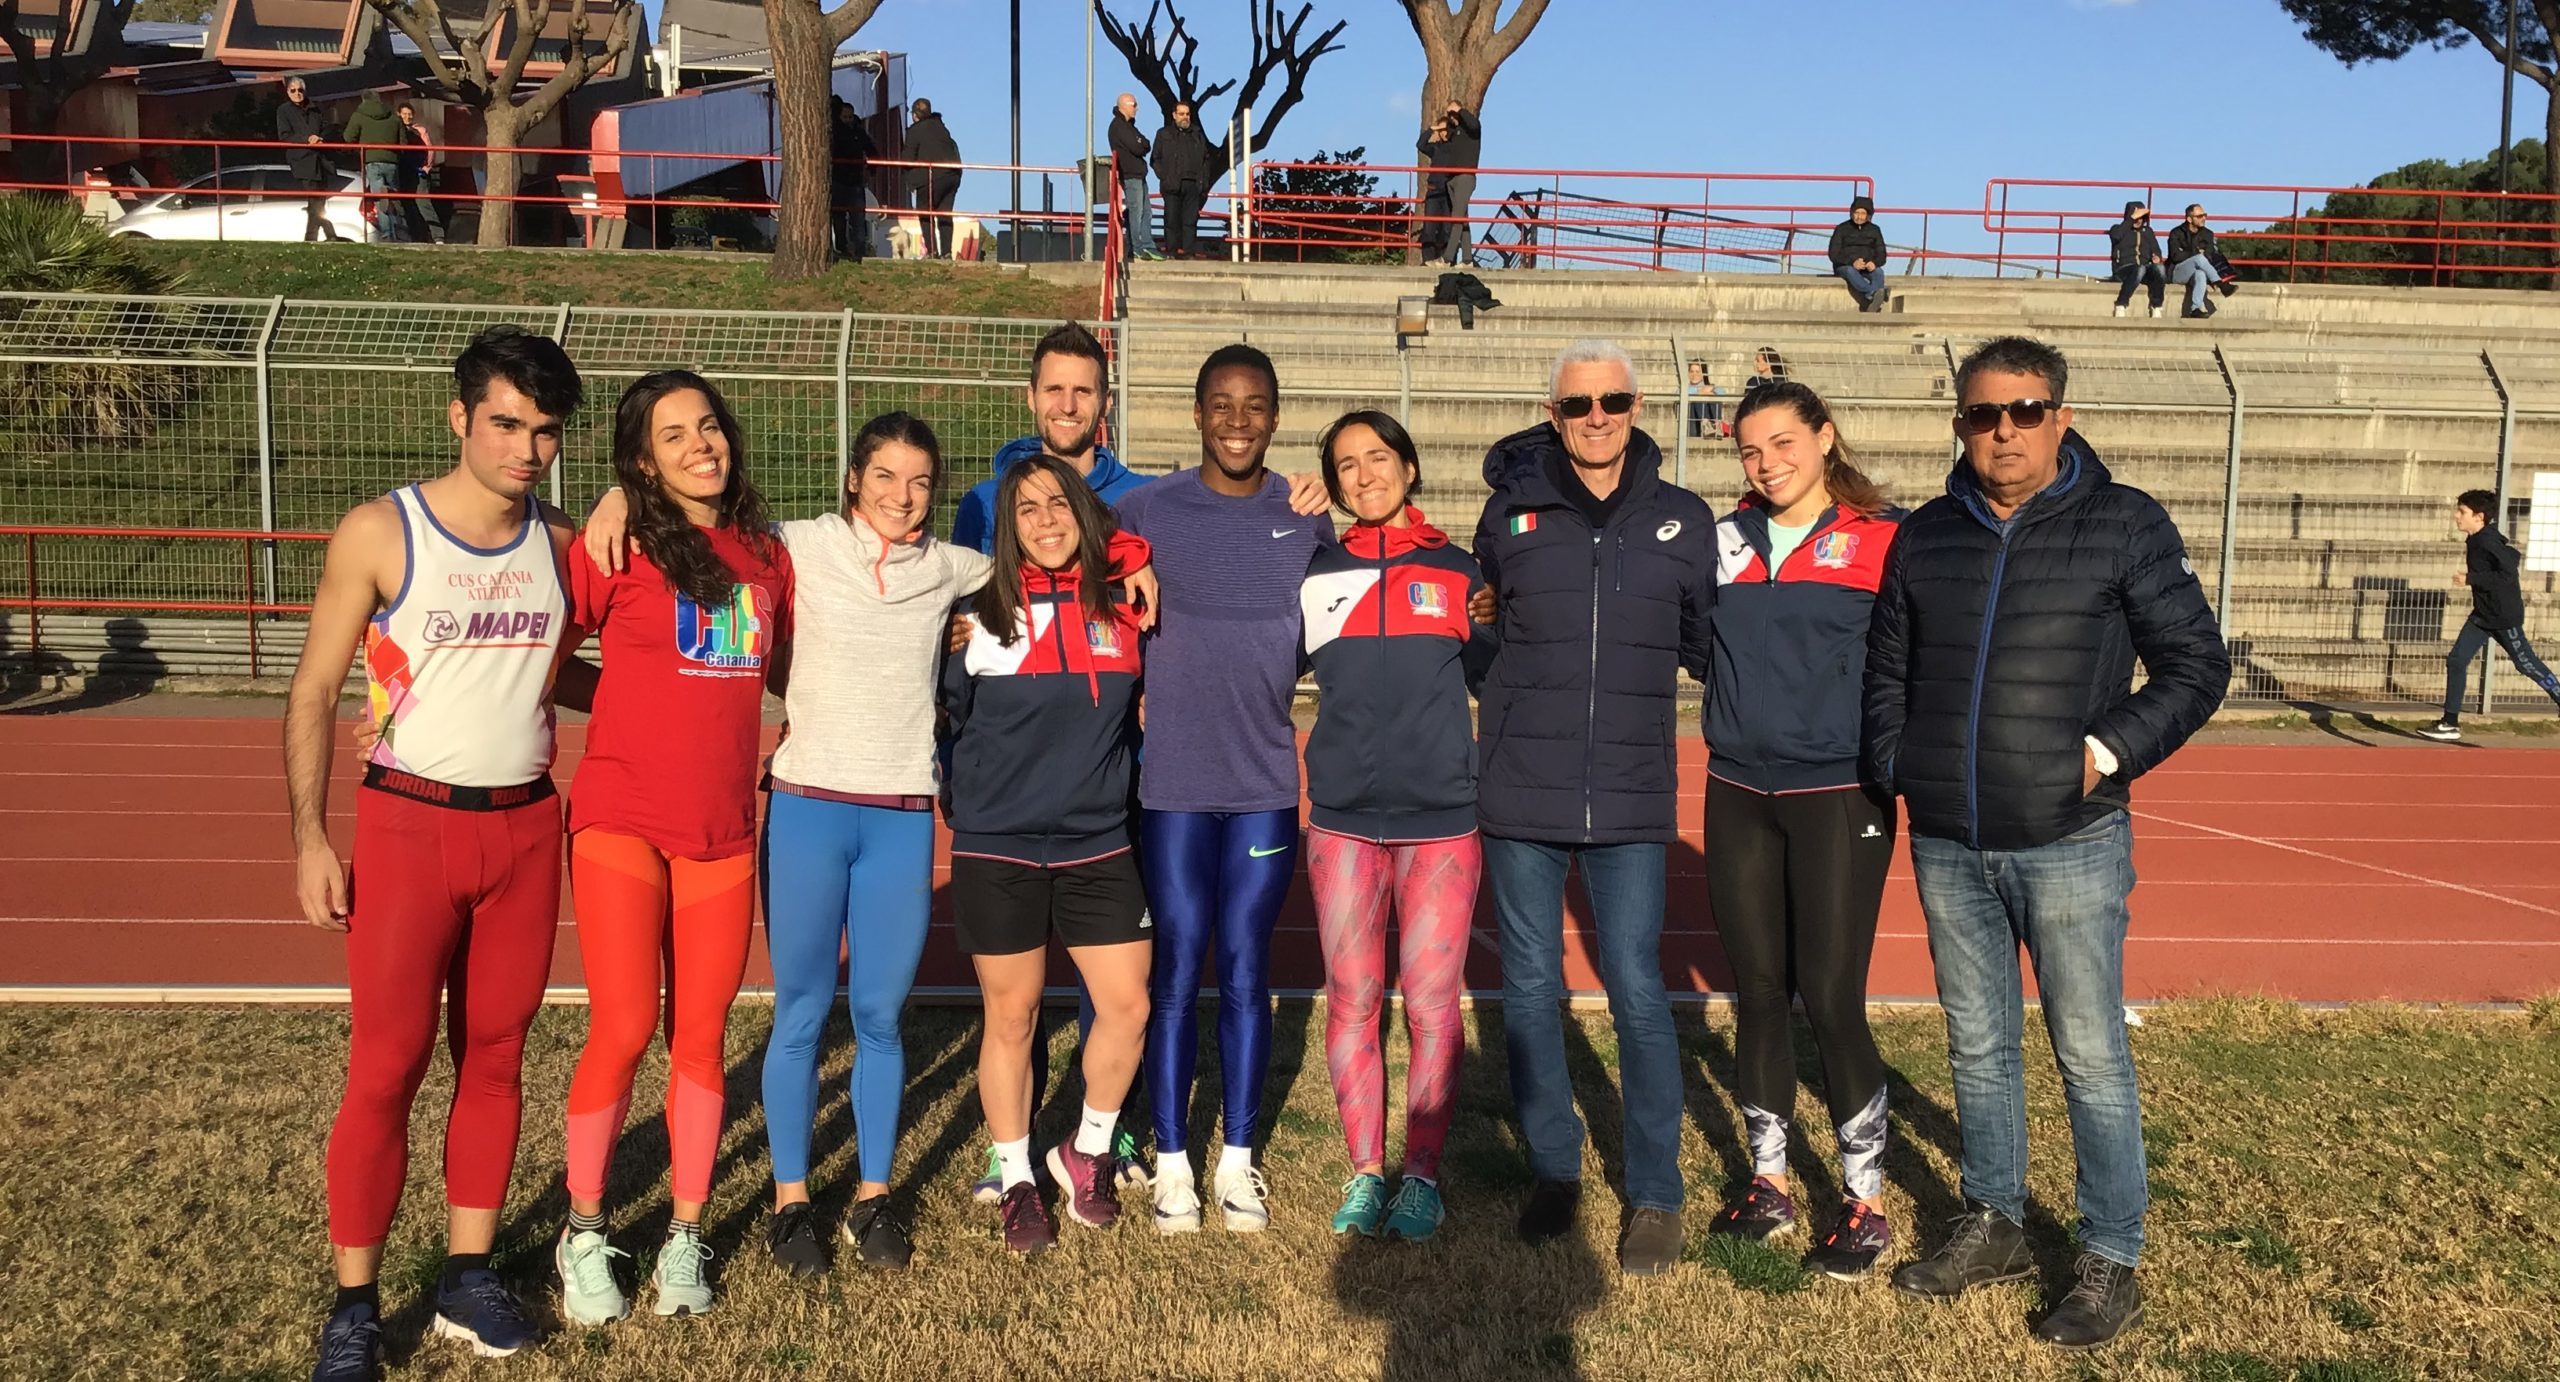 Settimana di allenamenti al CUS Catania per lo sprinter azzurro Desalu